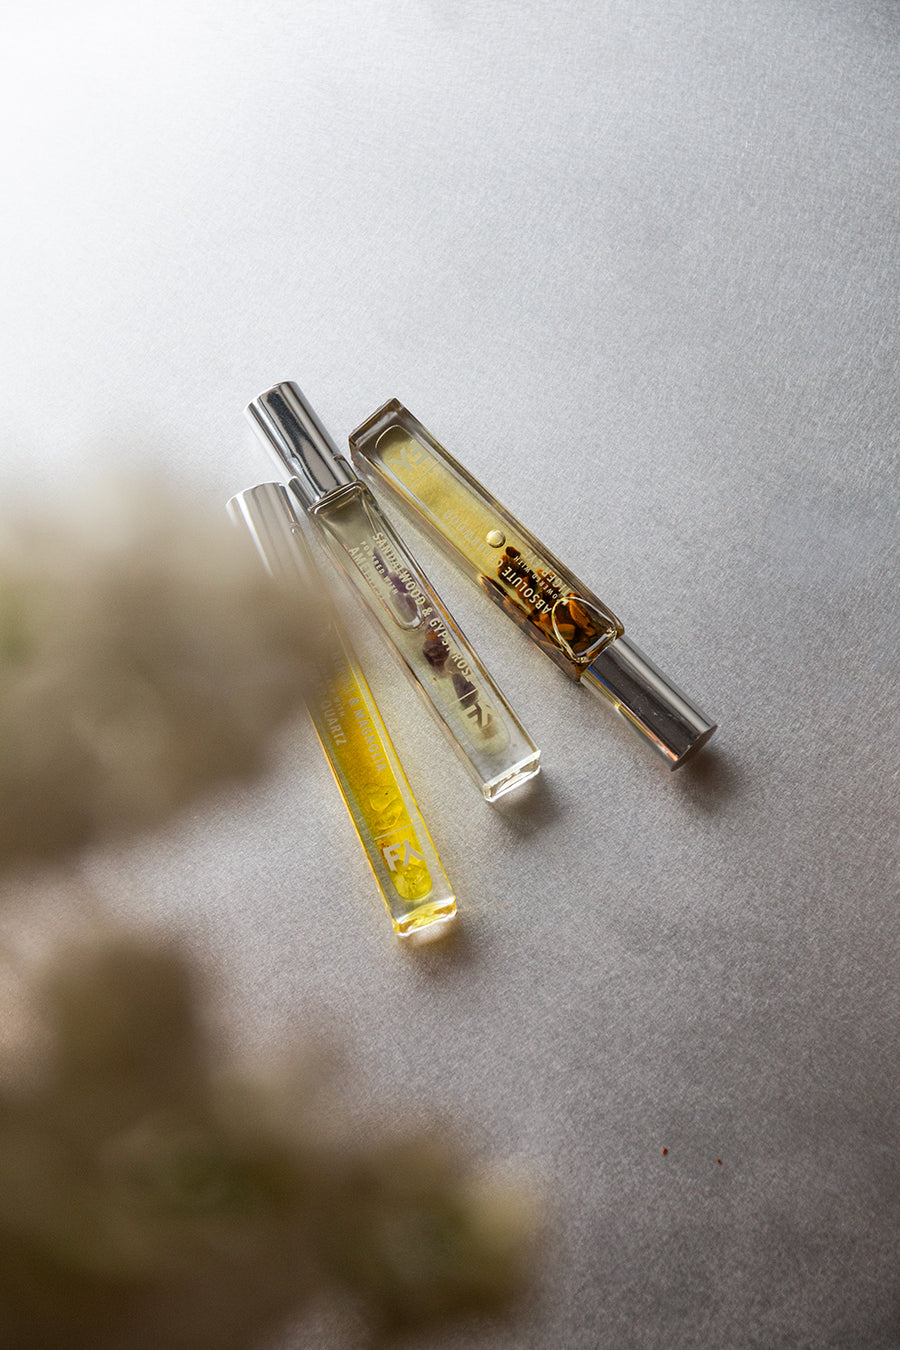 Perfume Oil / Absolute Cedarwood